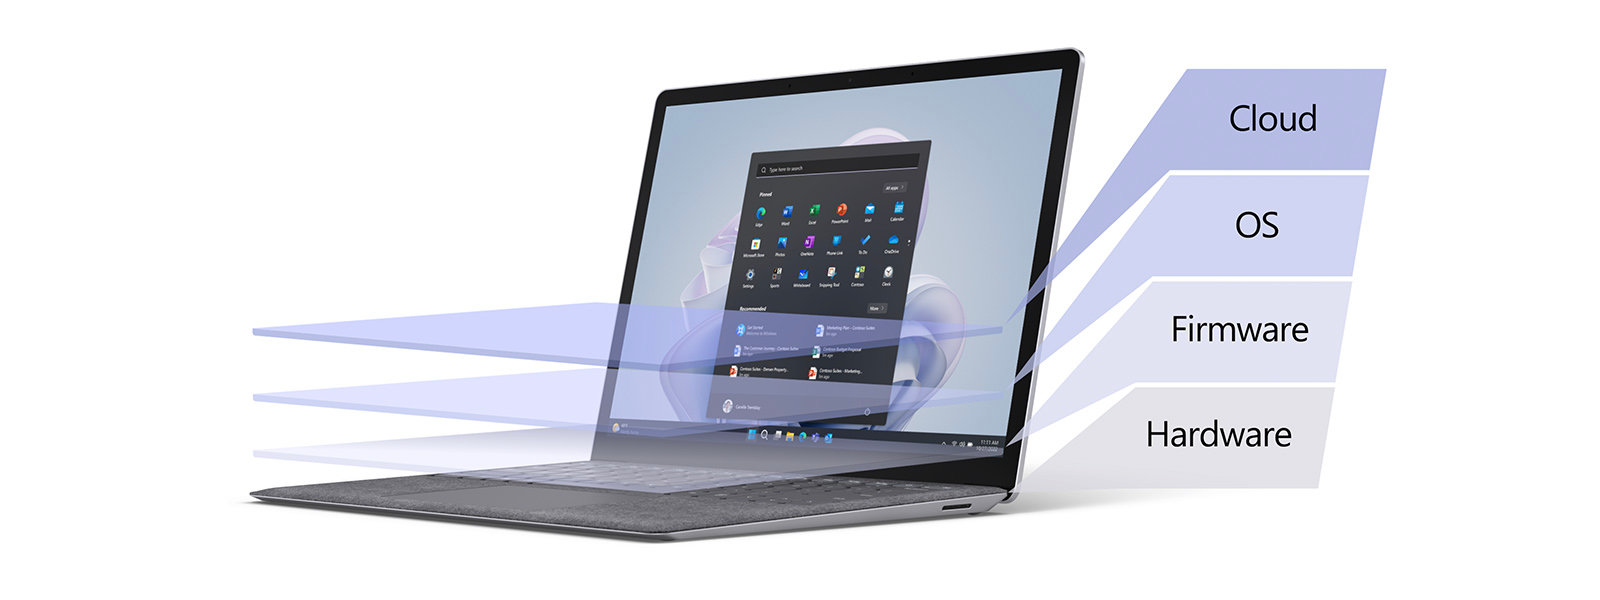 Surface 手提電腦覆蓋著顏色漸層，呈現不同的安全性層級